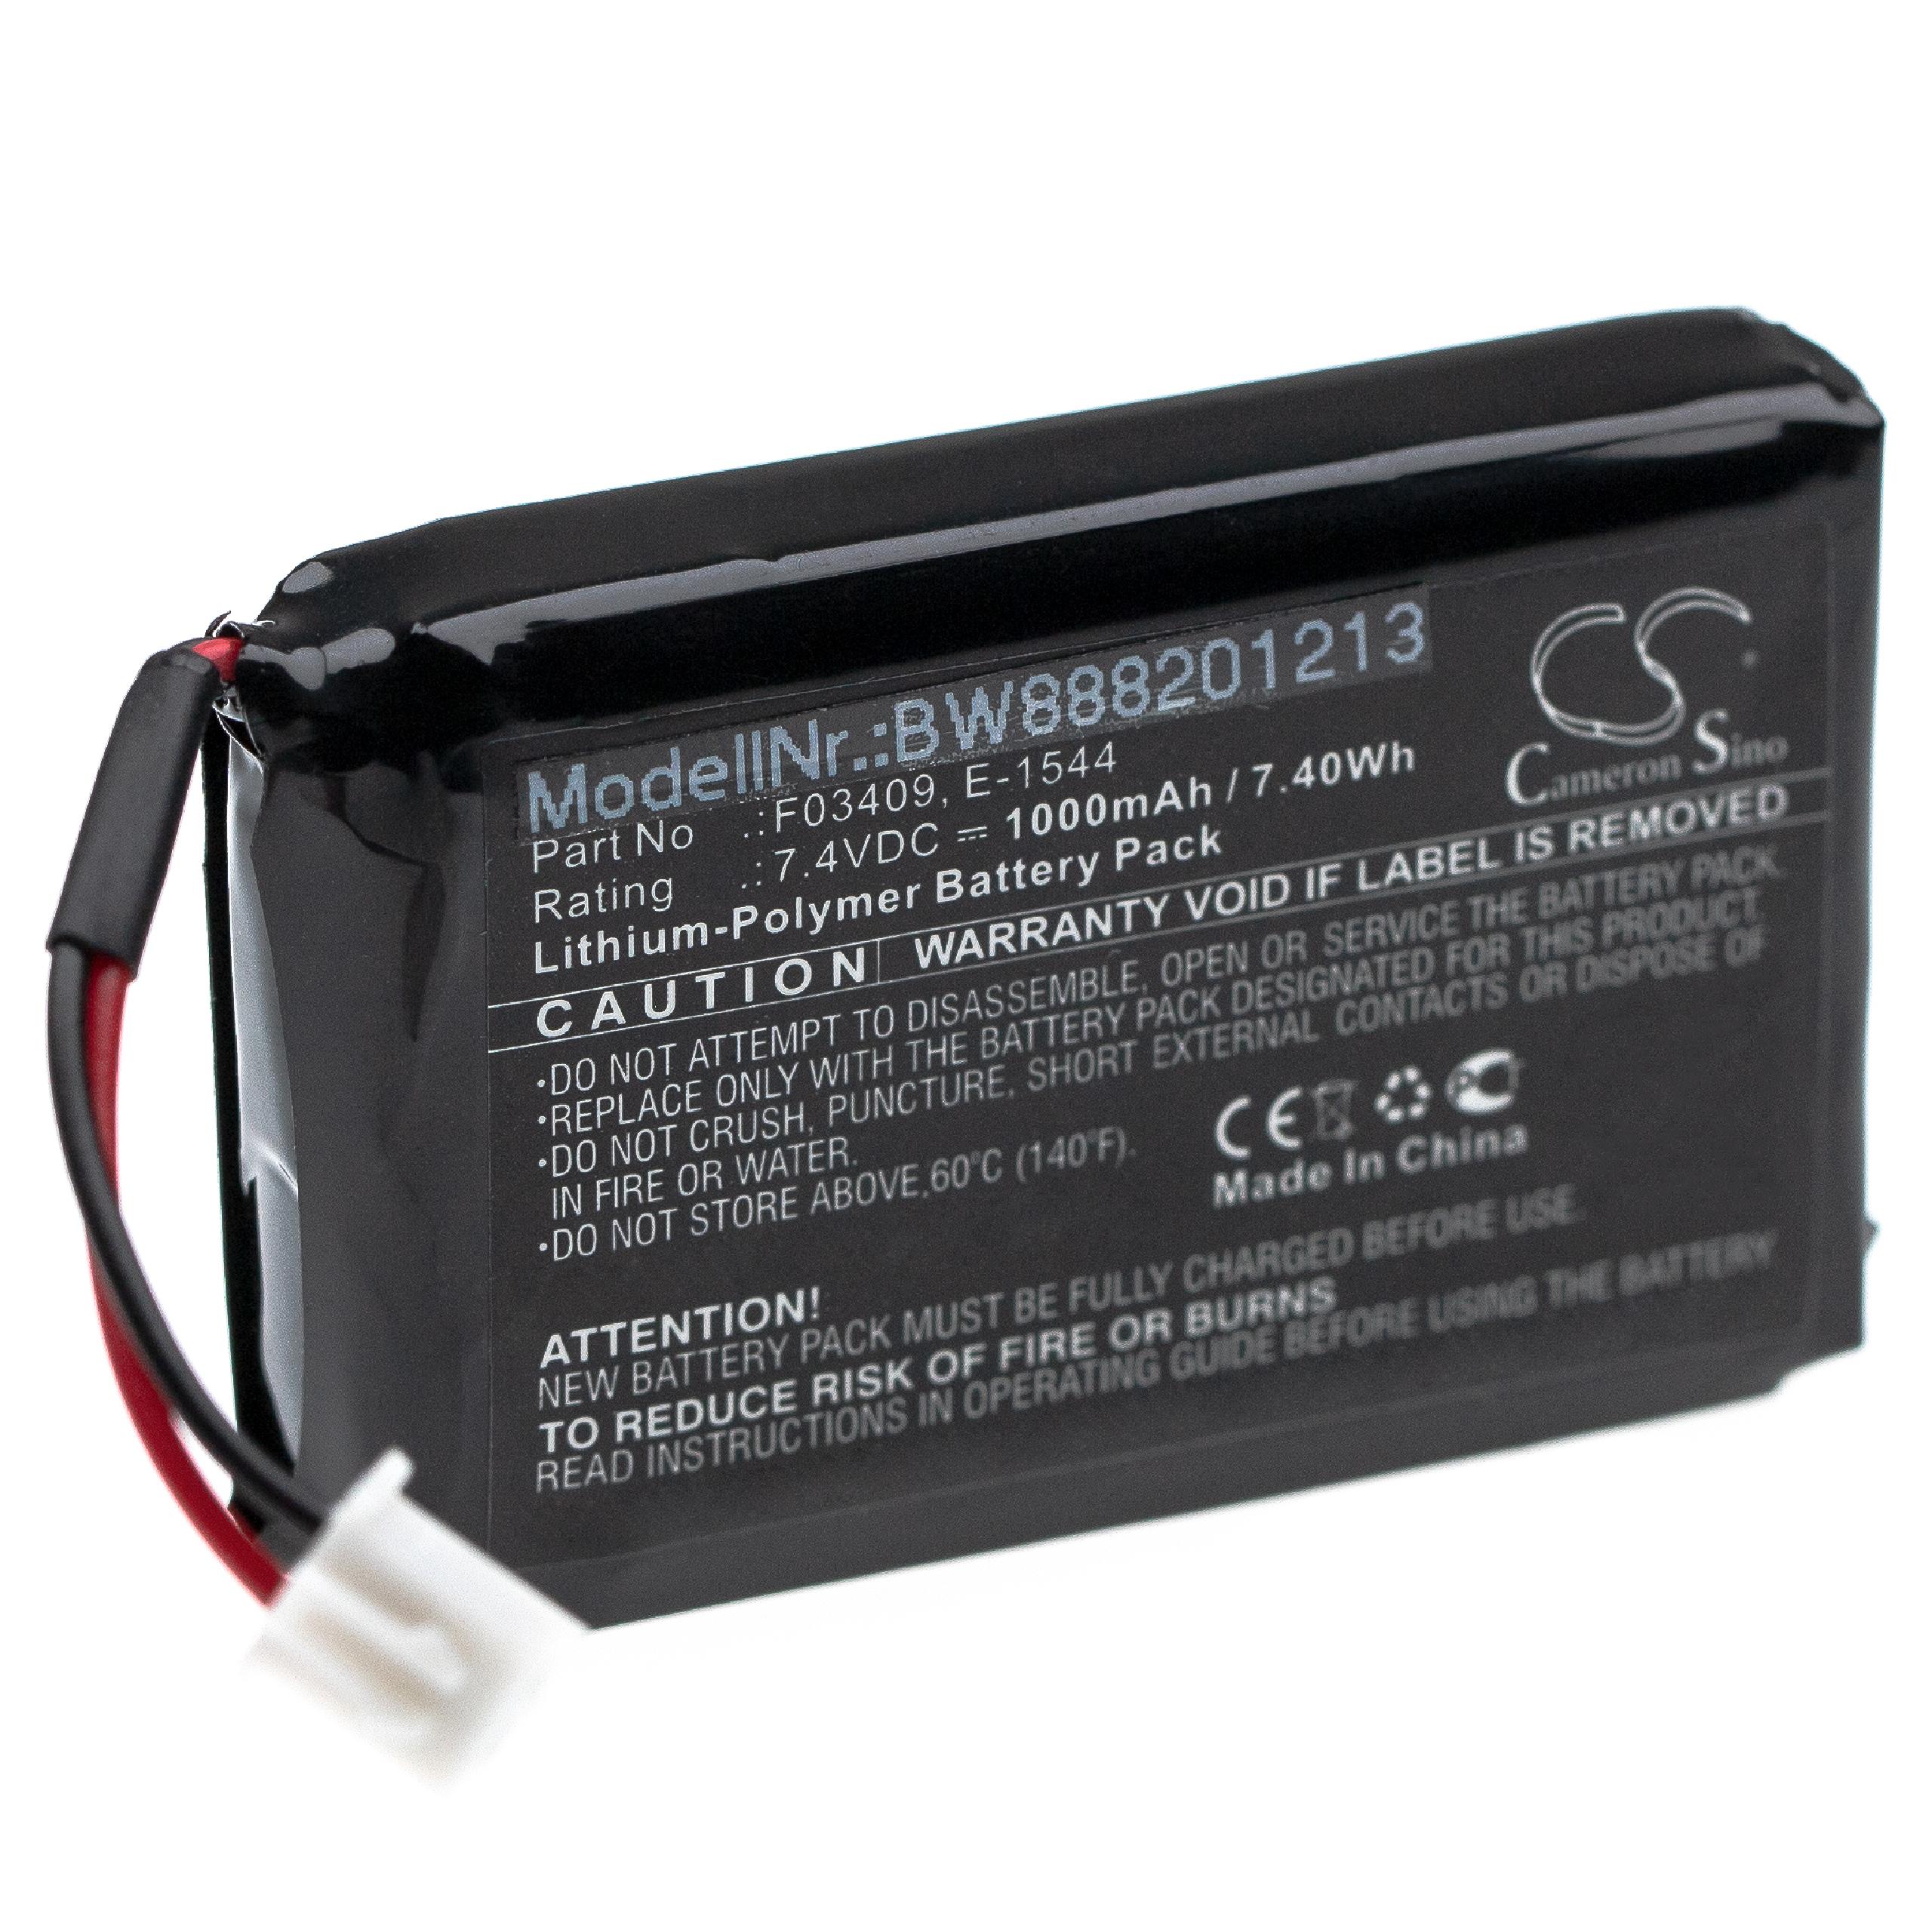 Batterie remplace Satlink F03409, E-1544 pour outil de mesure - 1000mAh 7,4V Li-polymère